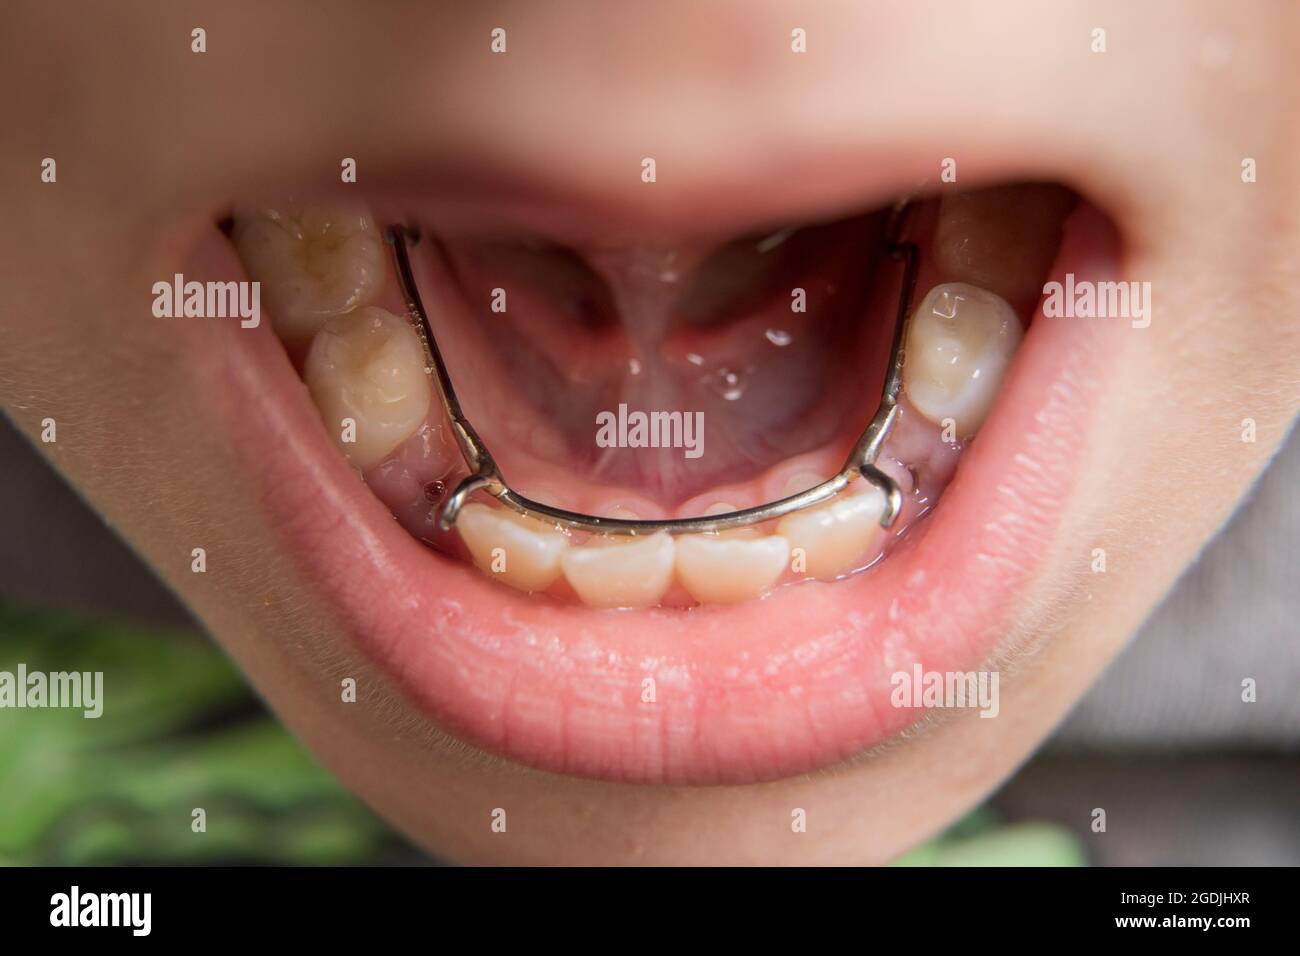 jeune garçon ayant un agent de maintenance de l'espace dentaire dans sa bouche Banque D'Images